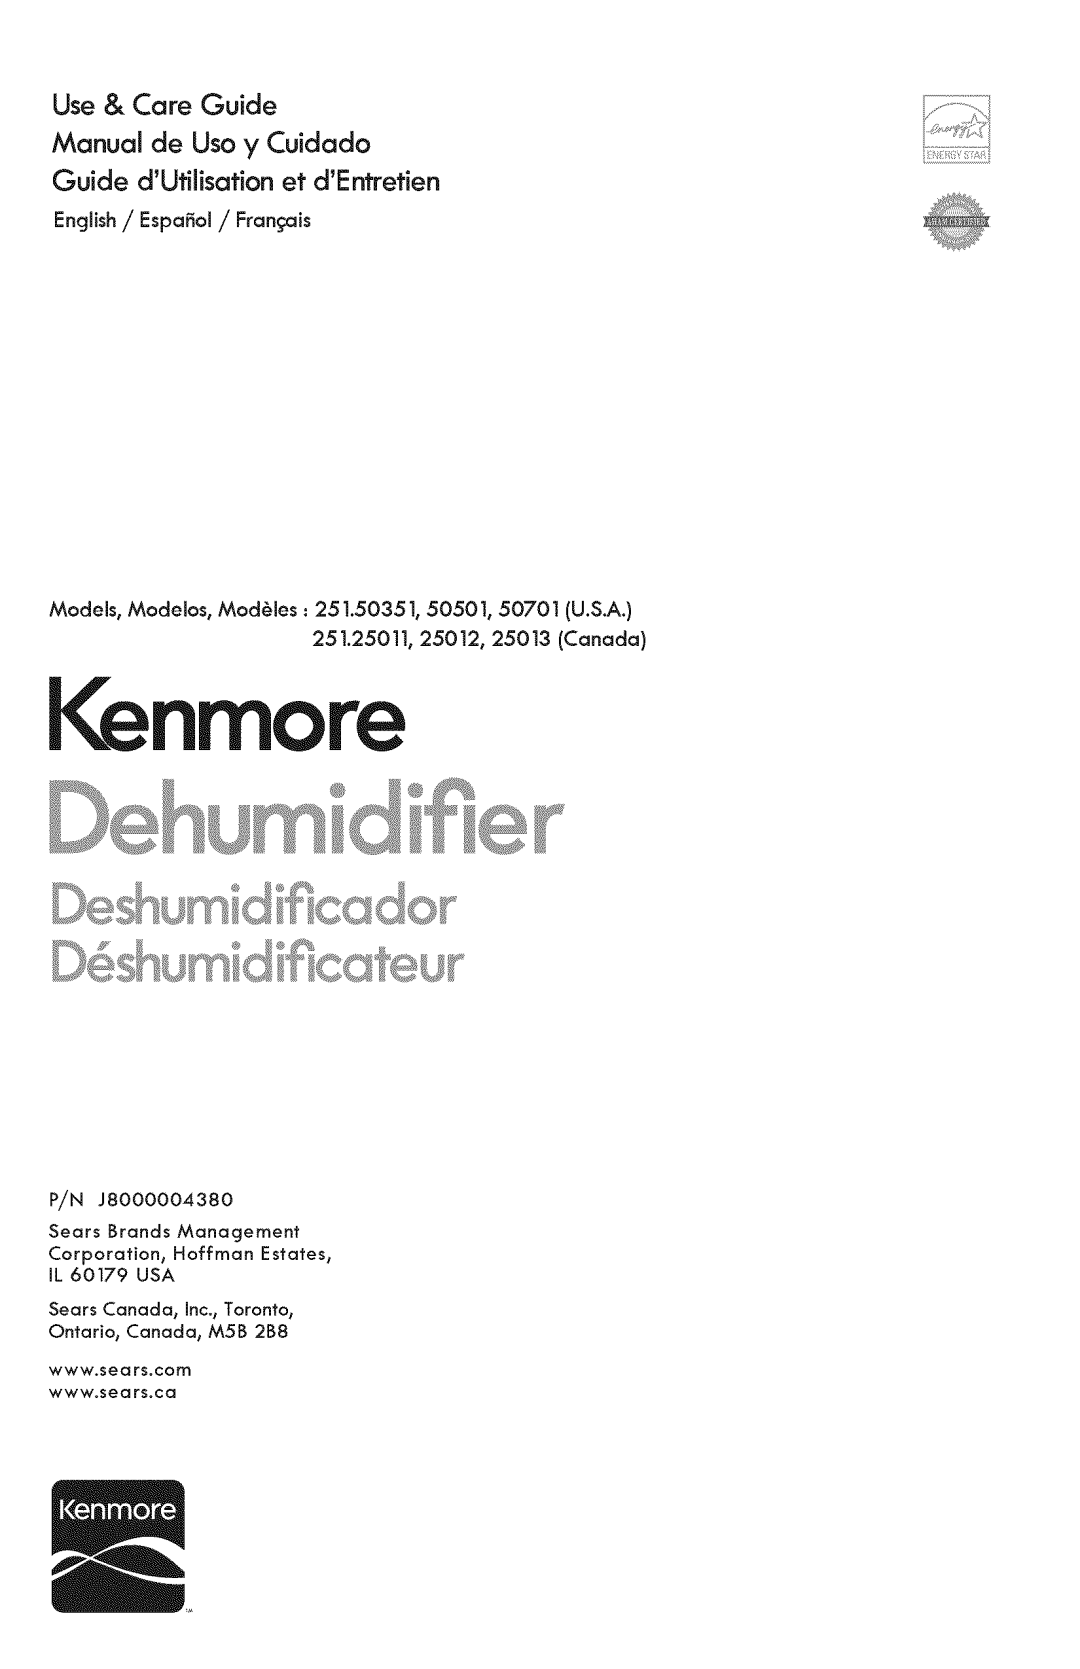 Kenmore 251.50501, 251.50701 manual I nmo, Use & Care Guide Manual de Uso y Cuidado, Guide dUtilisation et dE retien 